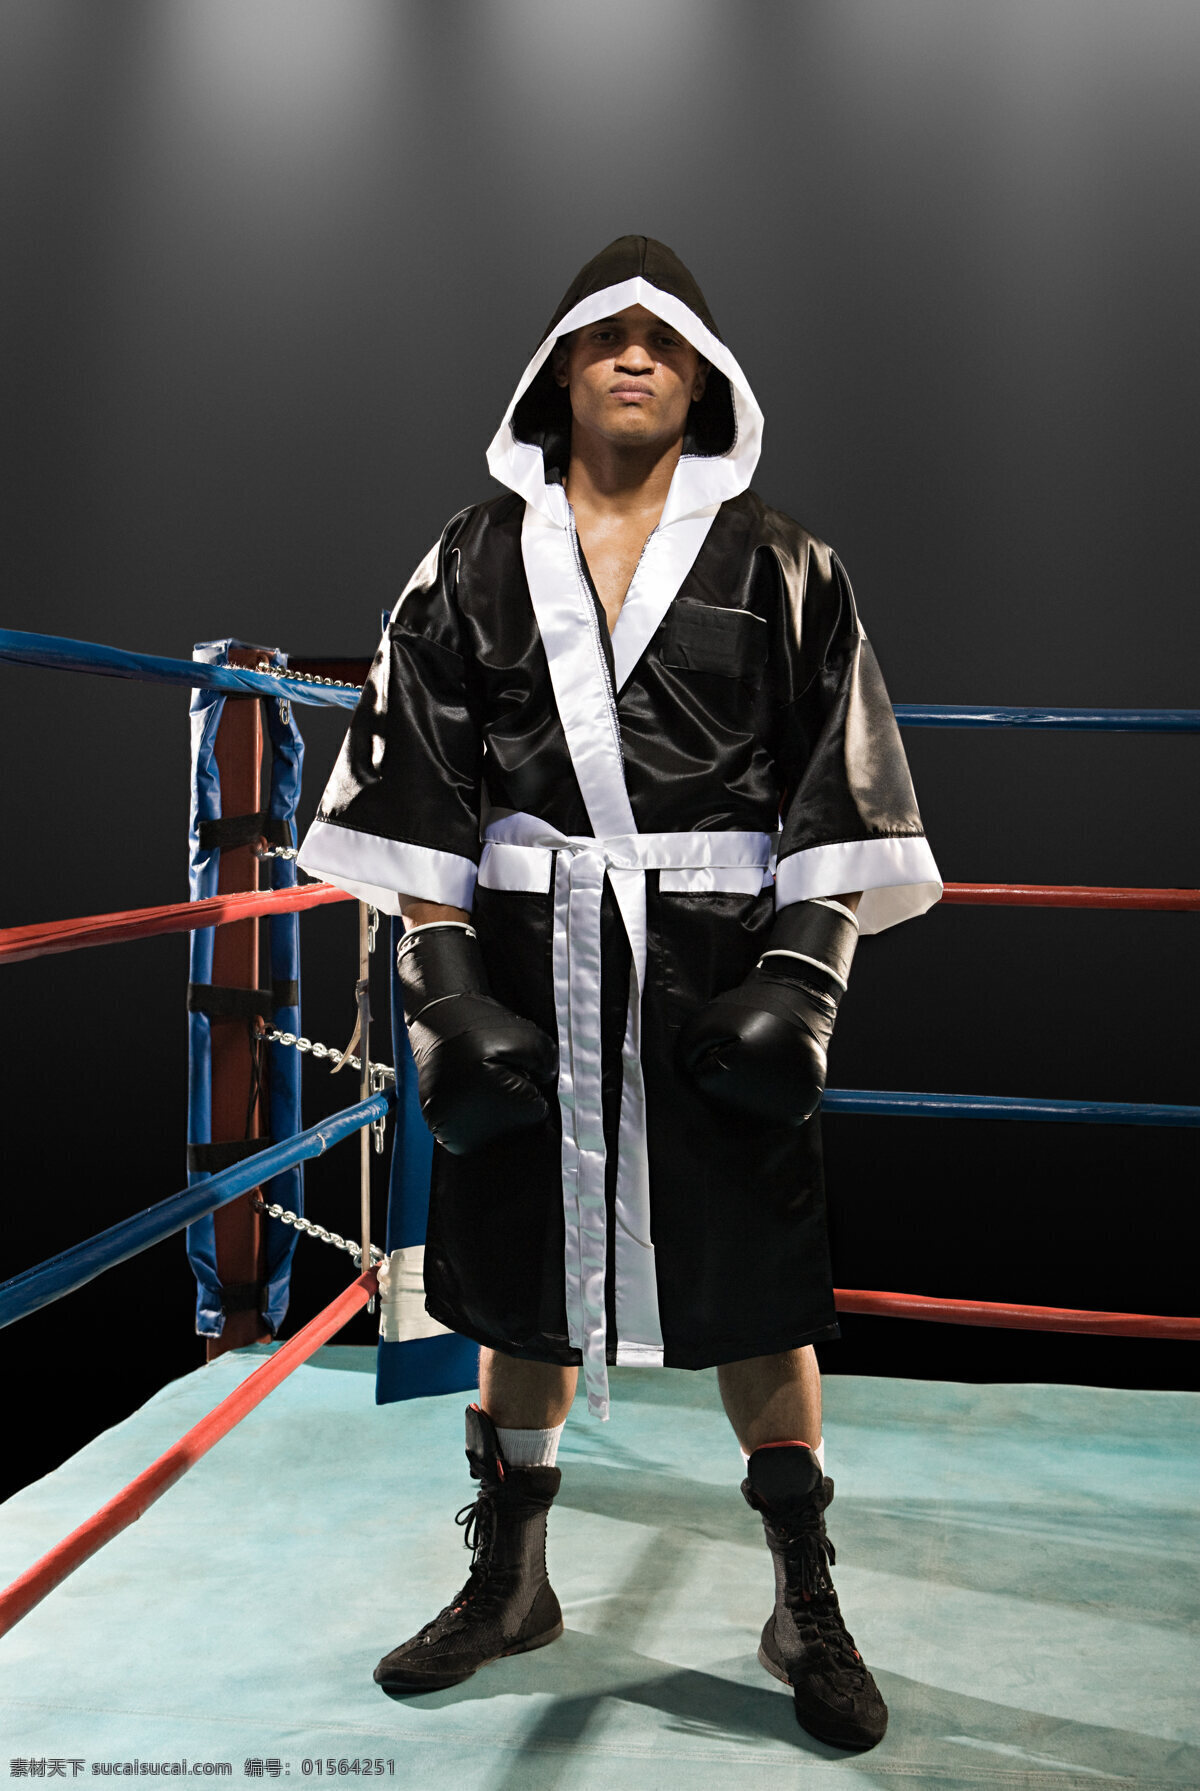 站 擂台 上 冷酷 拳击手 自信 比赛 凶狠 拳击手套 拳击 搏击 力量 男人 肌肉 高清图片 商务人士 人物图片